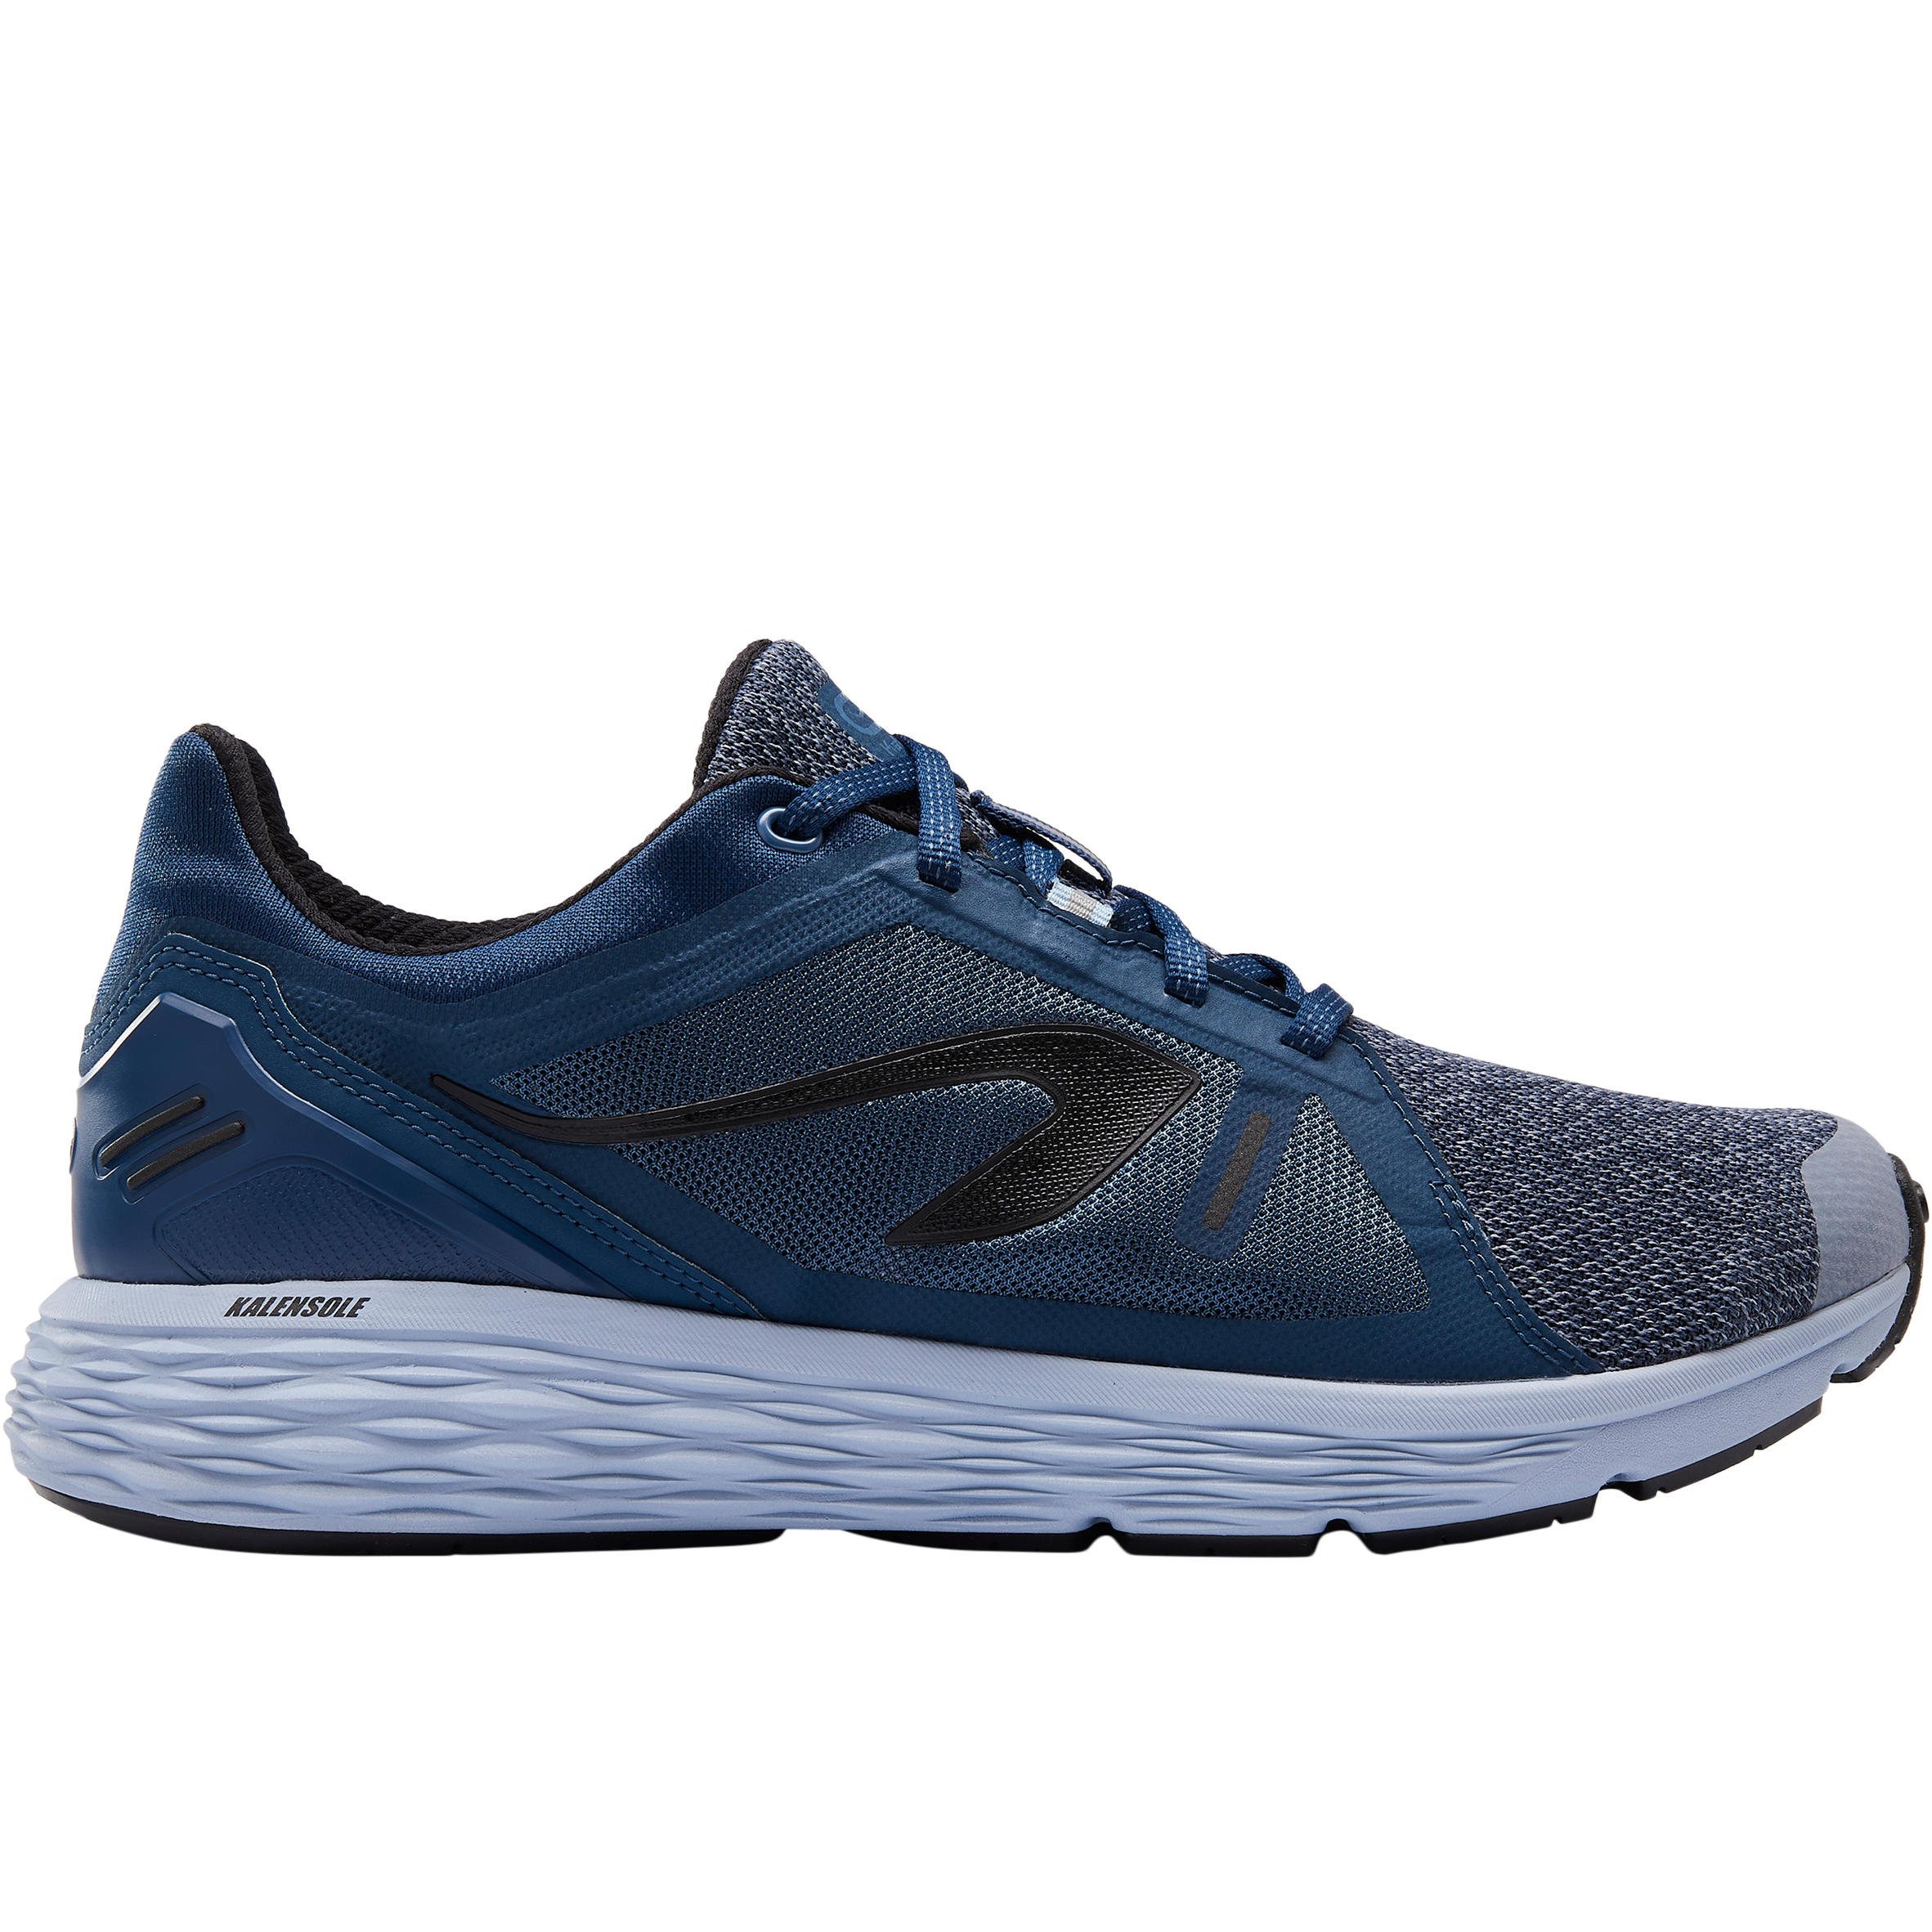 Buy Run Comfort Men's Jogging Shoes Blue Online | Decathlon